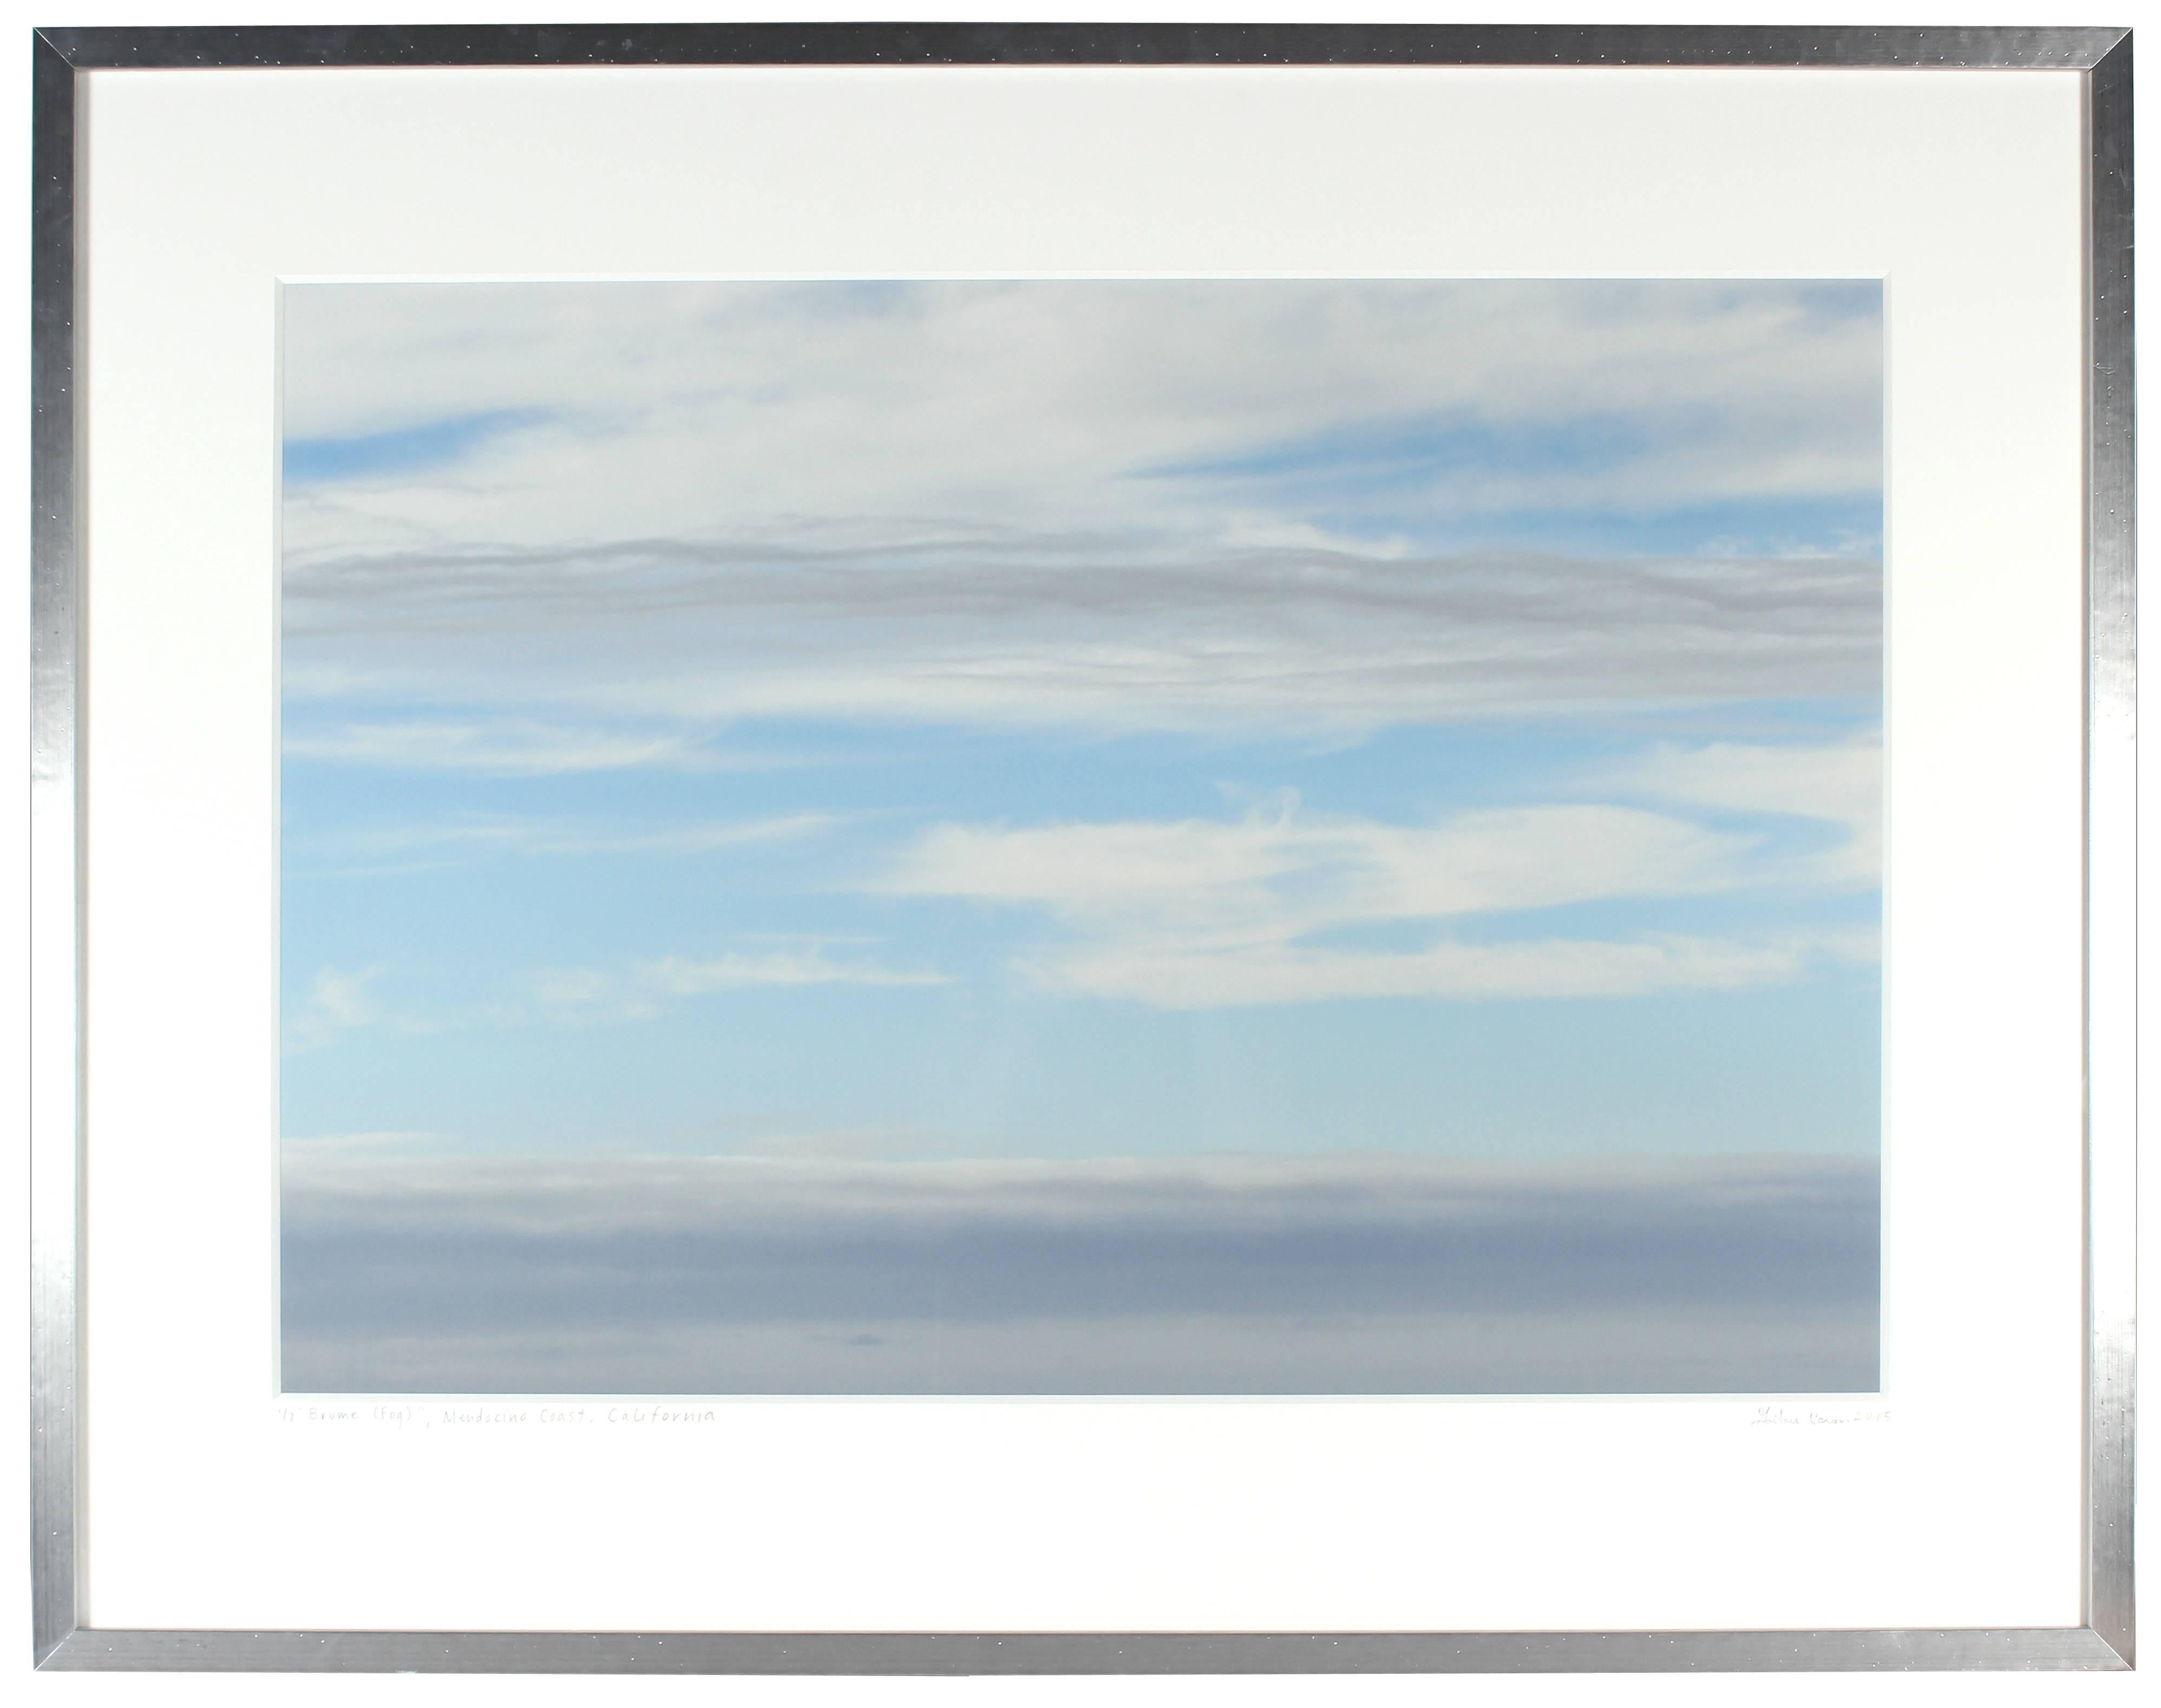 Gaétan Caron Abstract Photograph - "Brume (Fog)" Mendocino Color Photograph, 2015